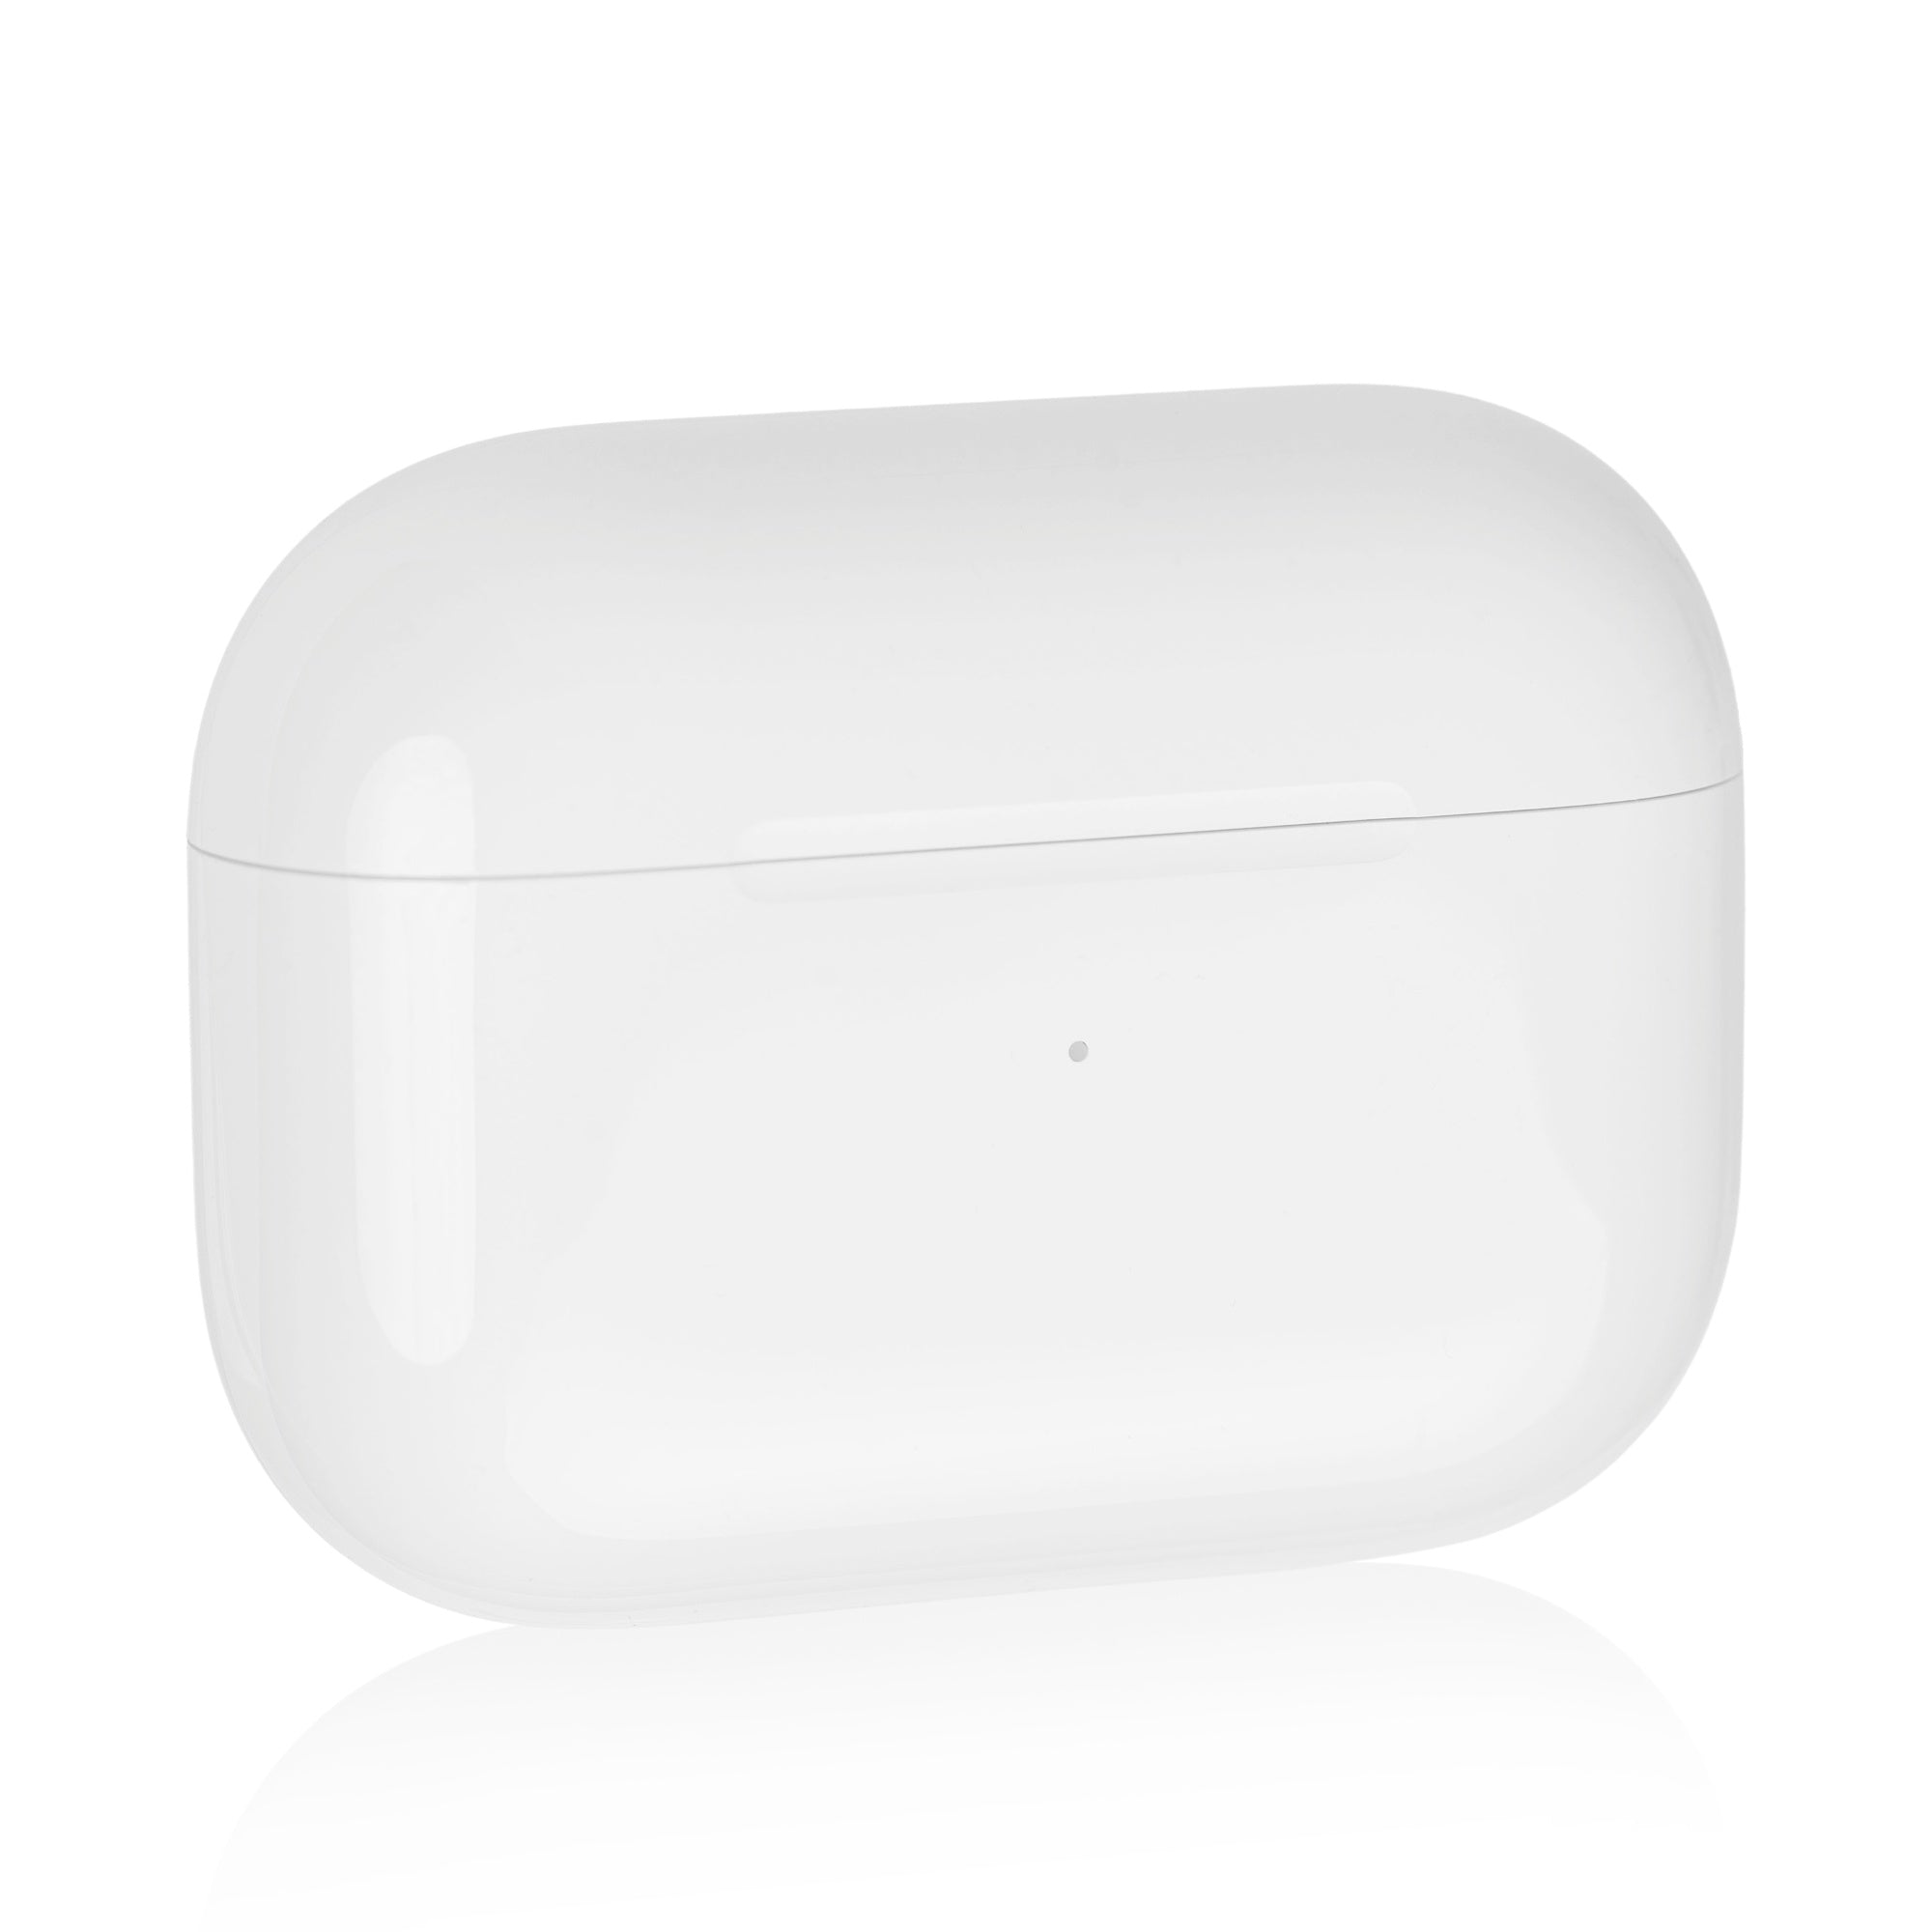 Apple AirPods Pro 2ème génération boîtier de chargement (MagSafe) de  rechange à l'unité